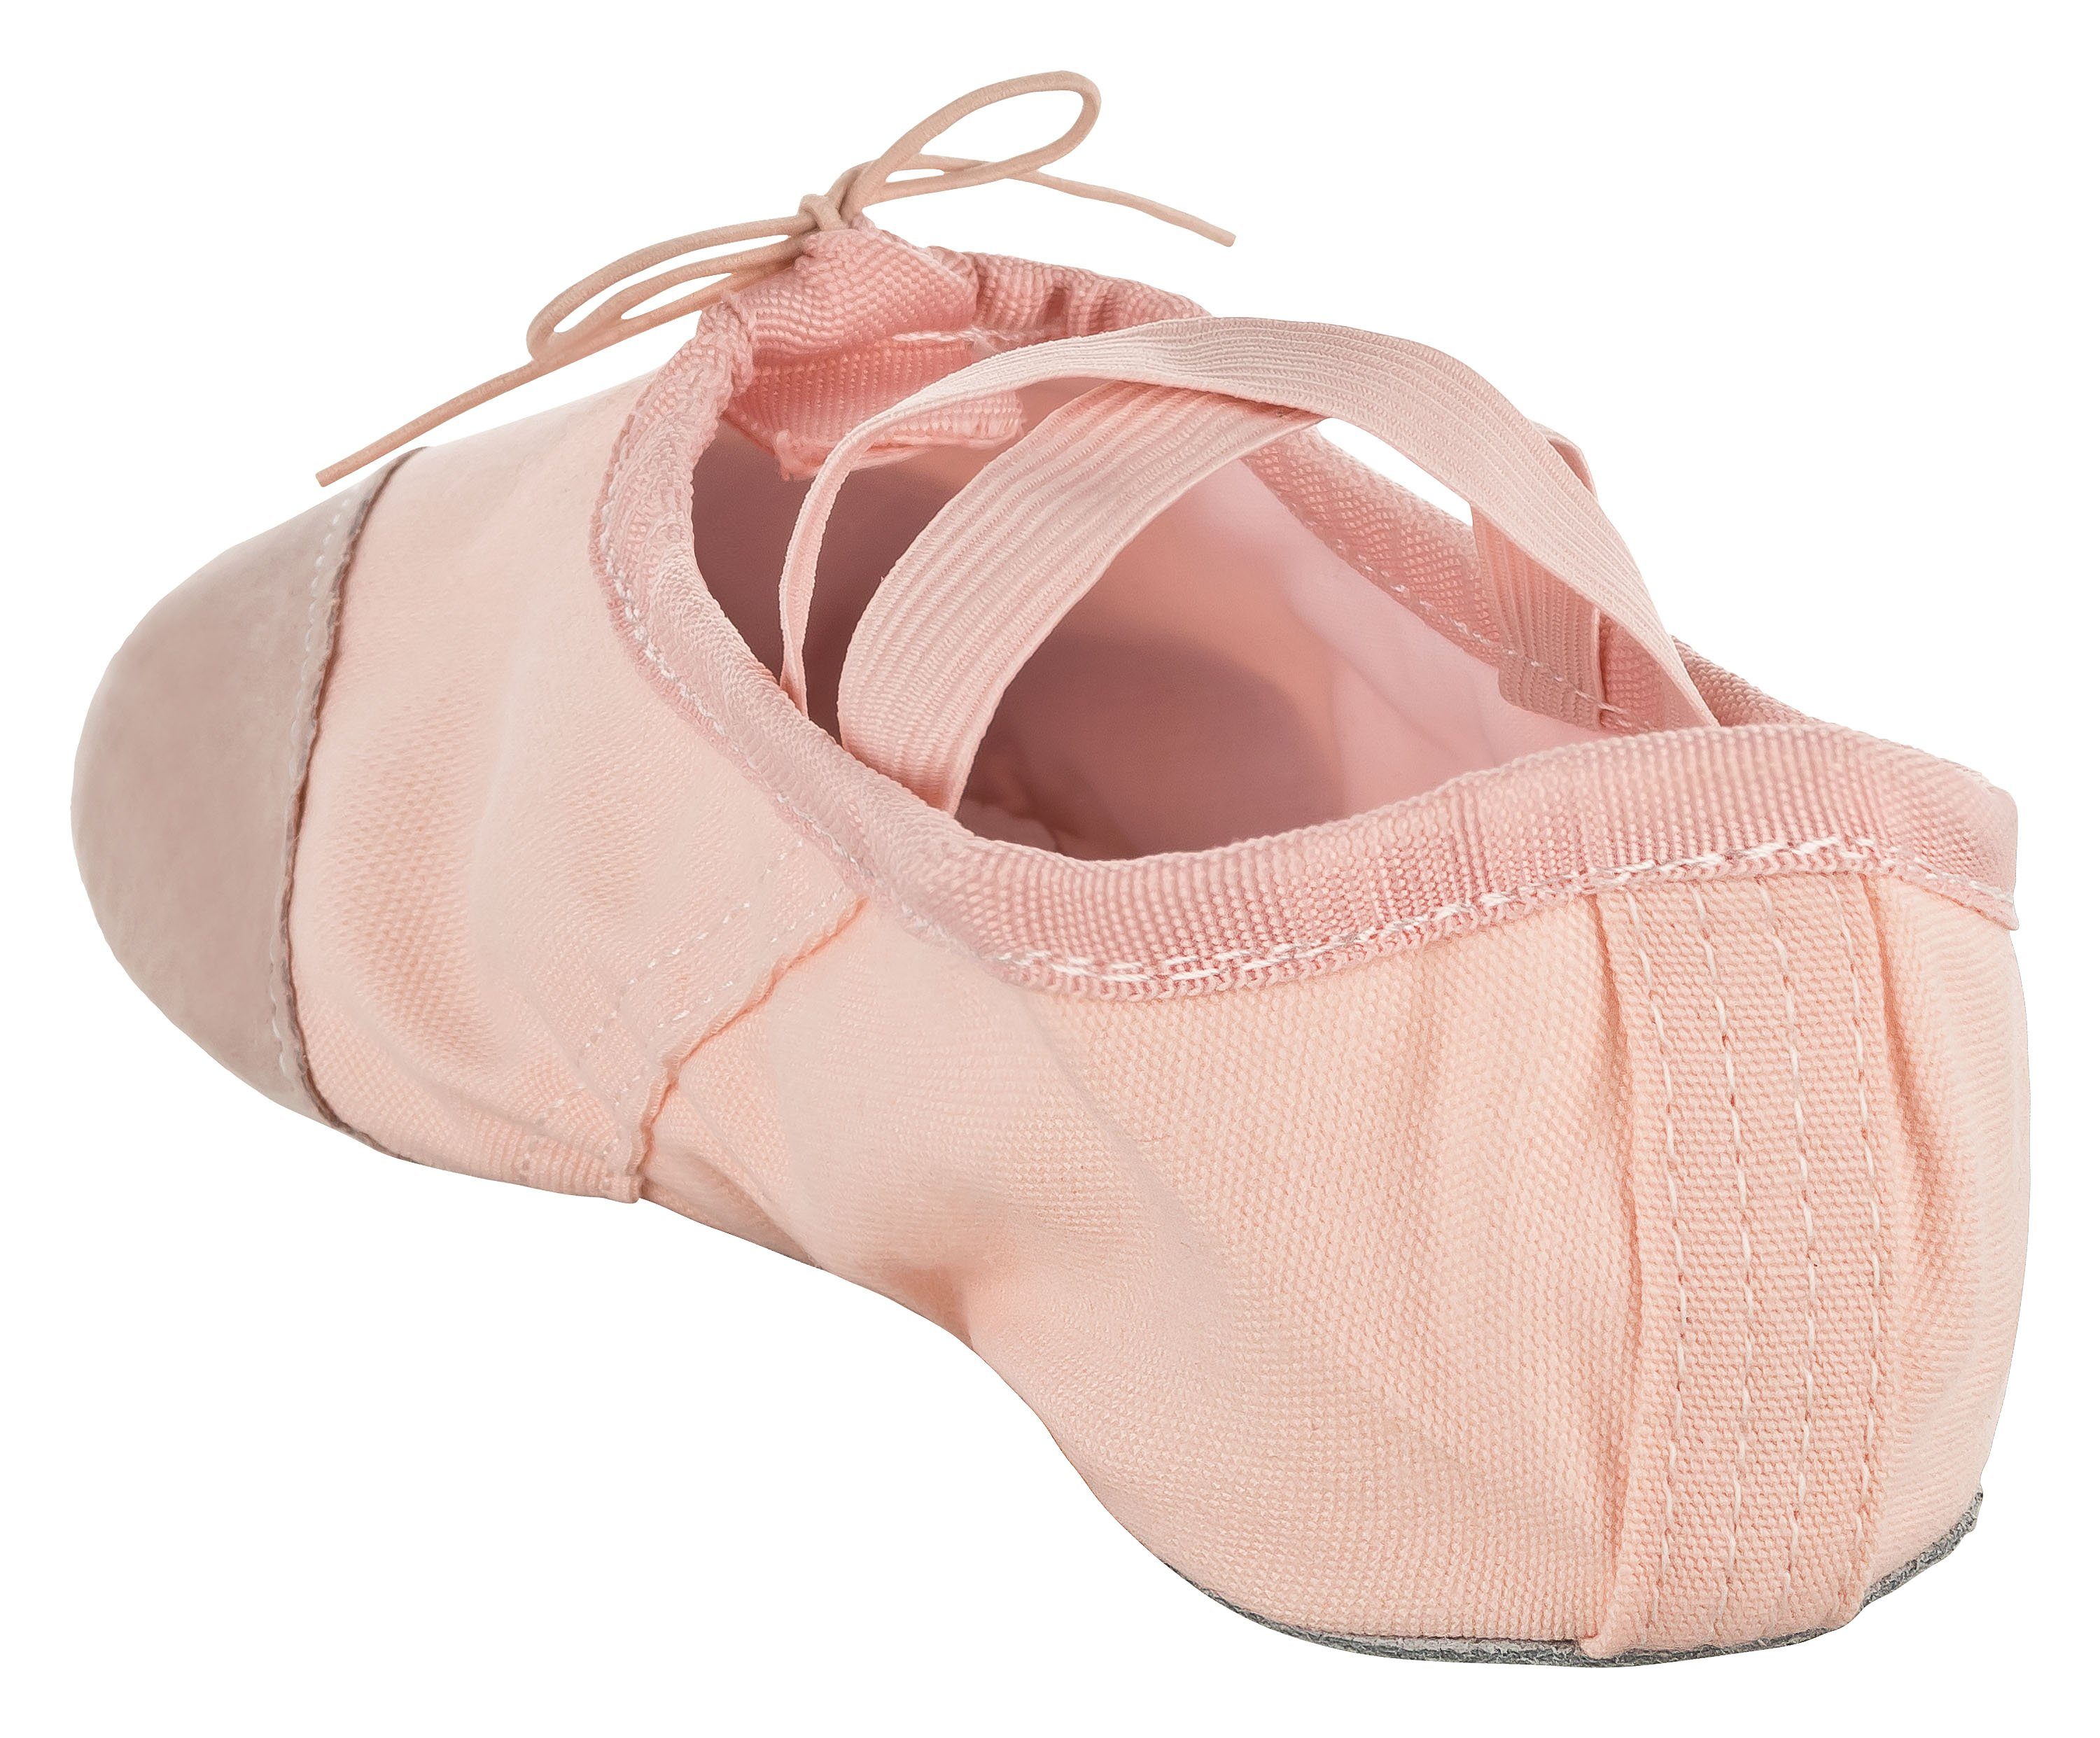 tanzmuster Ballettschuhe Robin und für geteilter Lederkappe rosa-apricot Mädchen Ballettschläppchen Tanzschuh mit Ledersohle